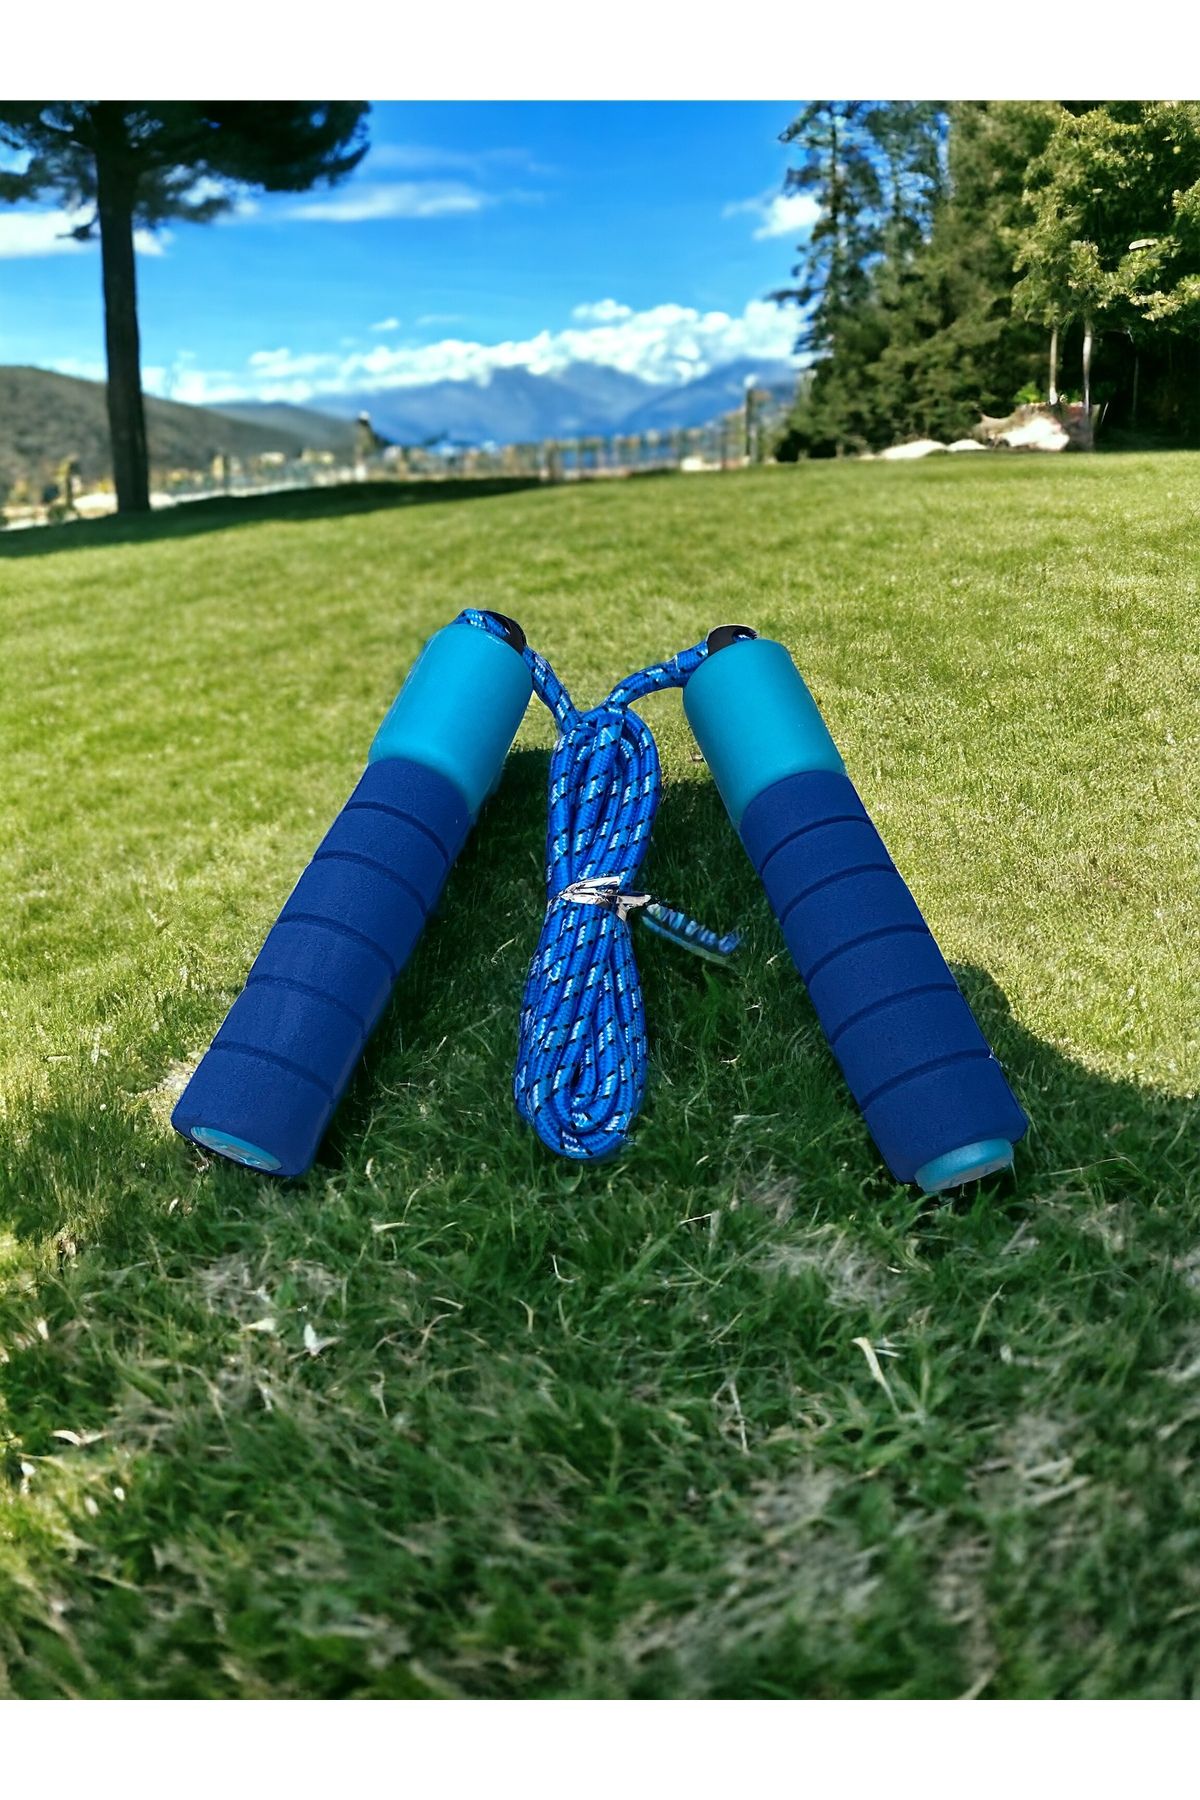 TOCSPORTS Çocuklara Özel Evde Bahçede Atlamalık - Çocuk Oyun Atlama İpi - Spor İp - 210 cm ip + 30 cm Sap